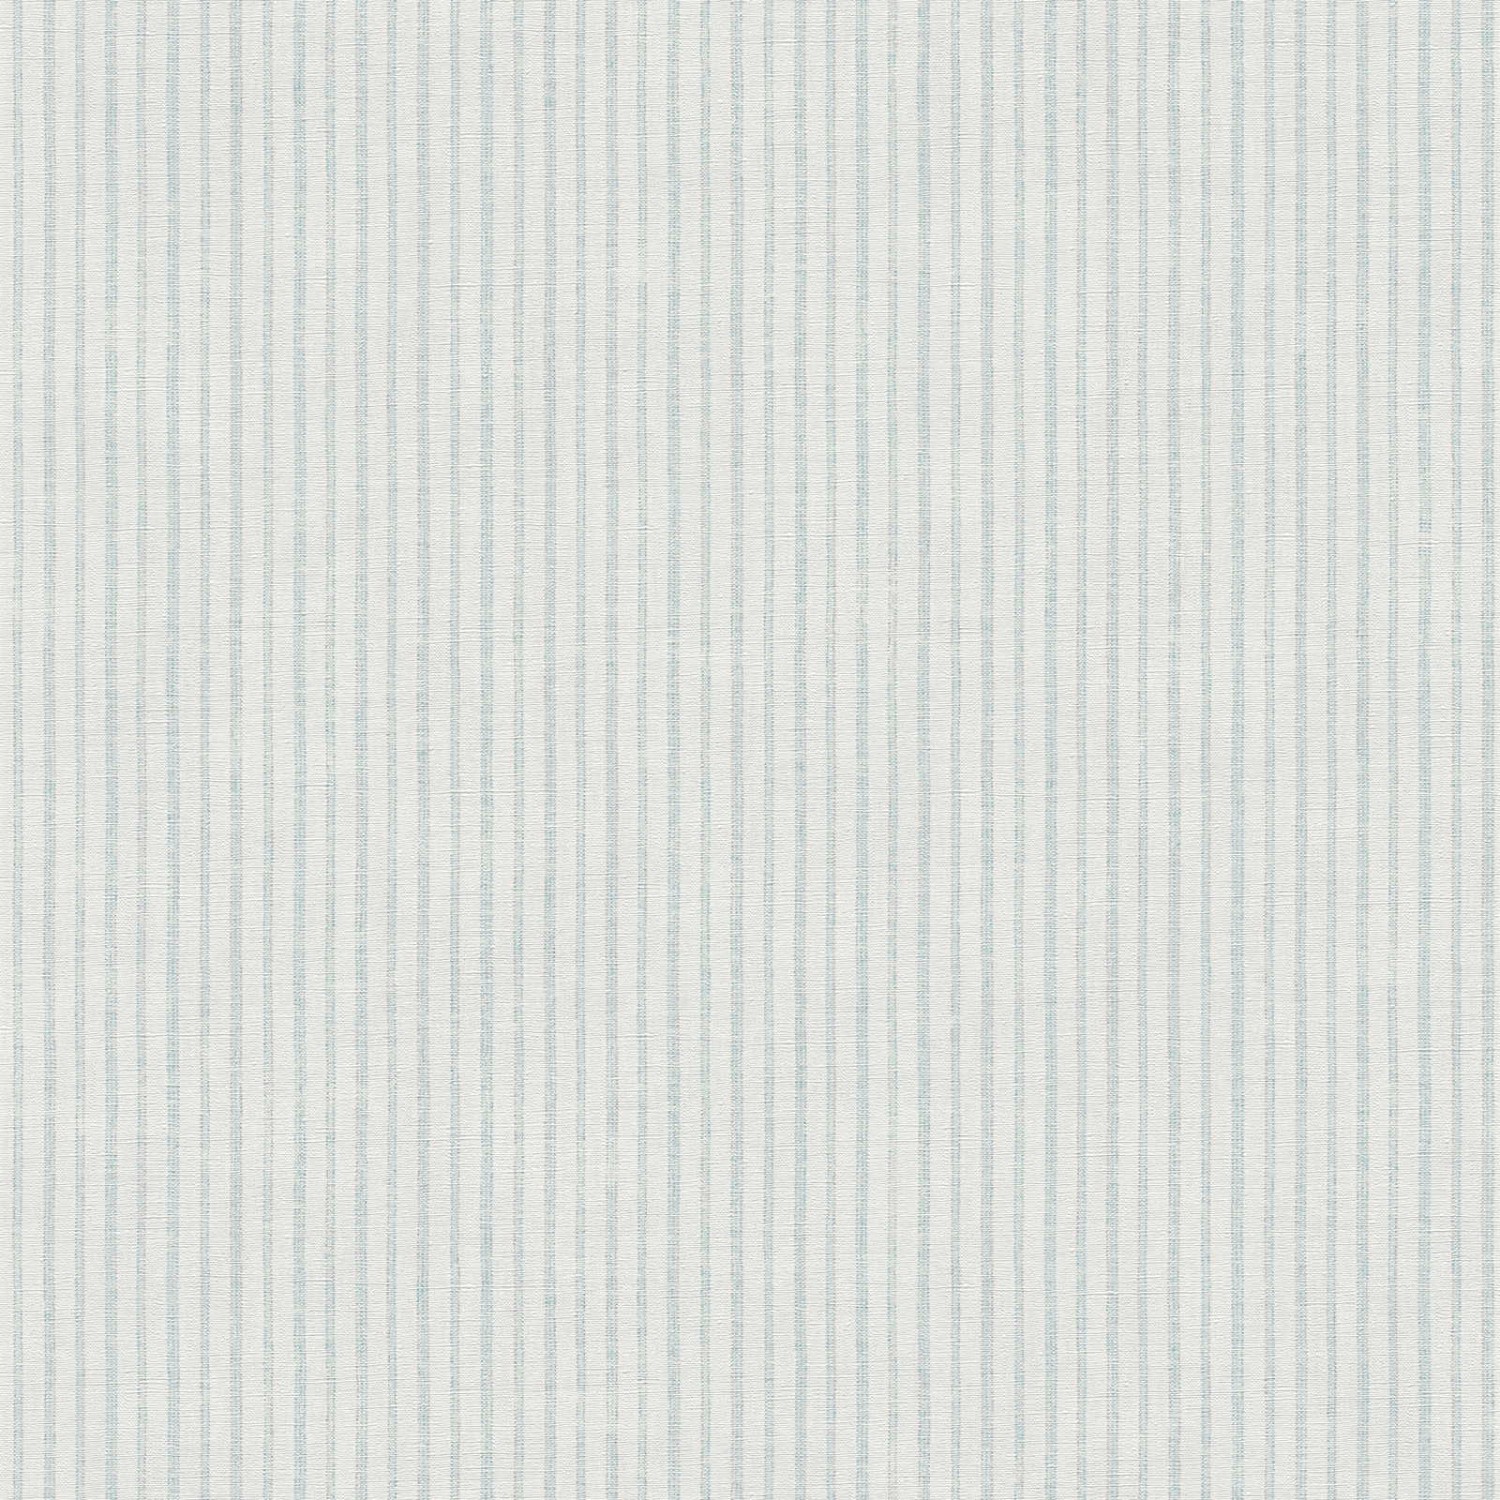 Bricoflor Maritime Tapete Streifen Dünn Vlies Streifentapete Weiß Blau Ideal für Küche und Schlafzimmer Gestreifte Vliestapete von Bricoflor